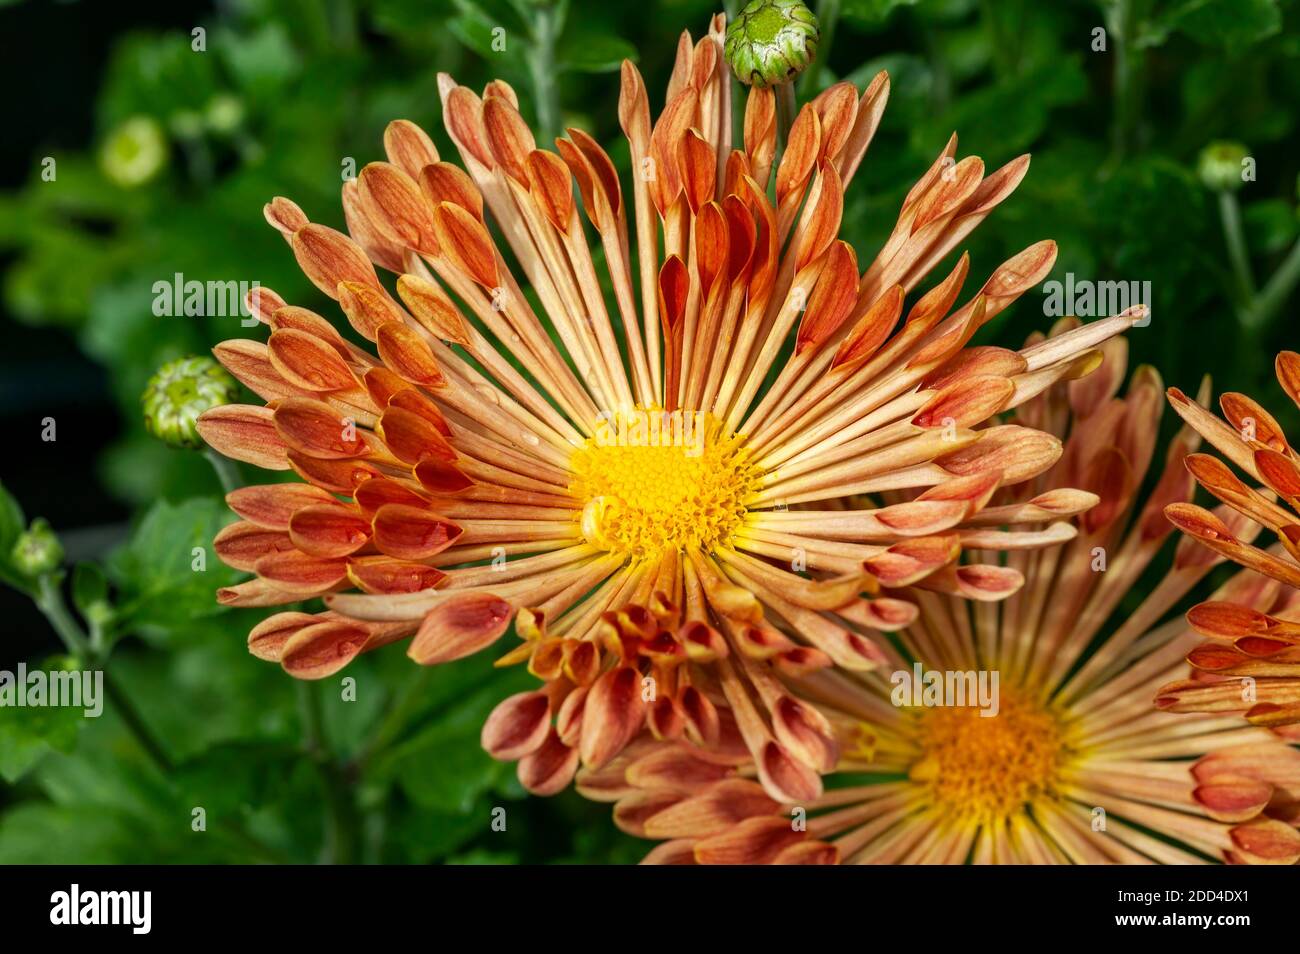 Chrysanthème 'Louise' une plante de fleur d'automne rose orange d'été communément connue sous le nom de mums ou chrysanths, image de stock photo Banque D'Images